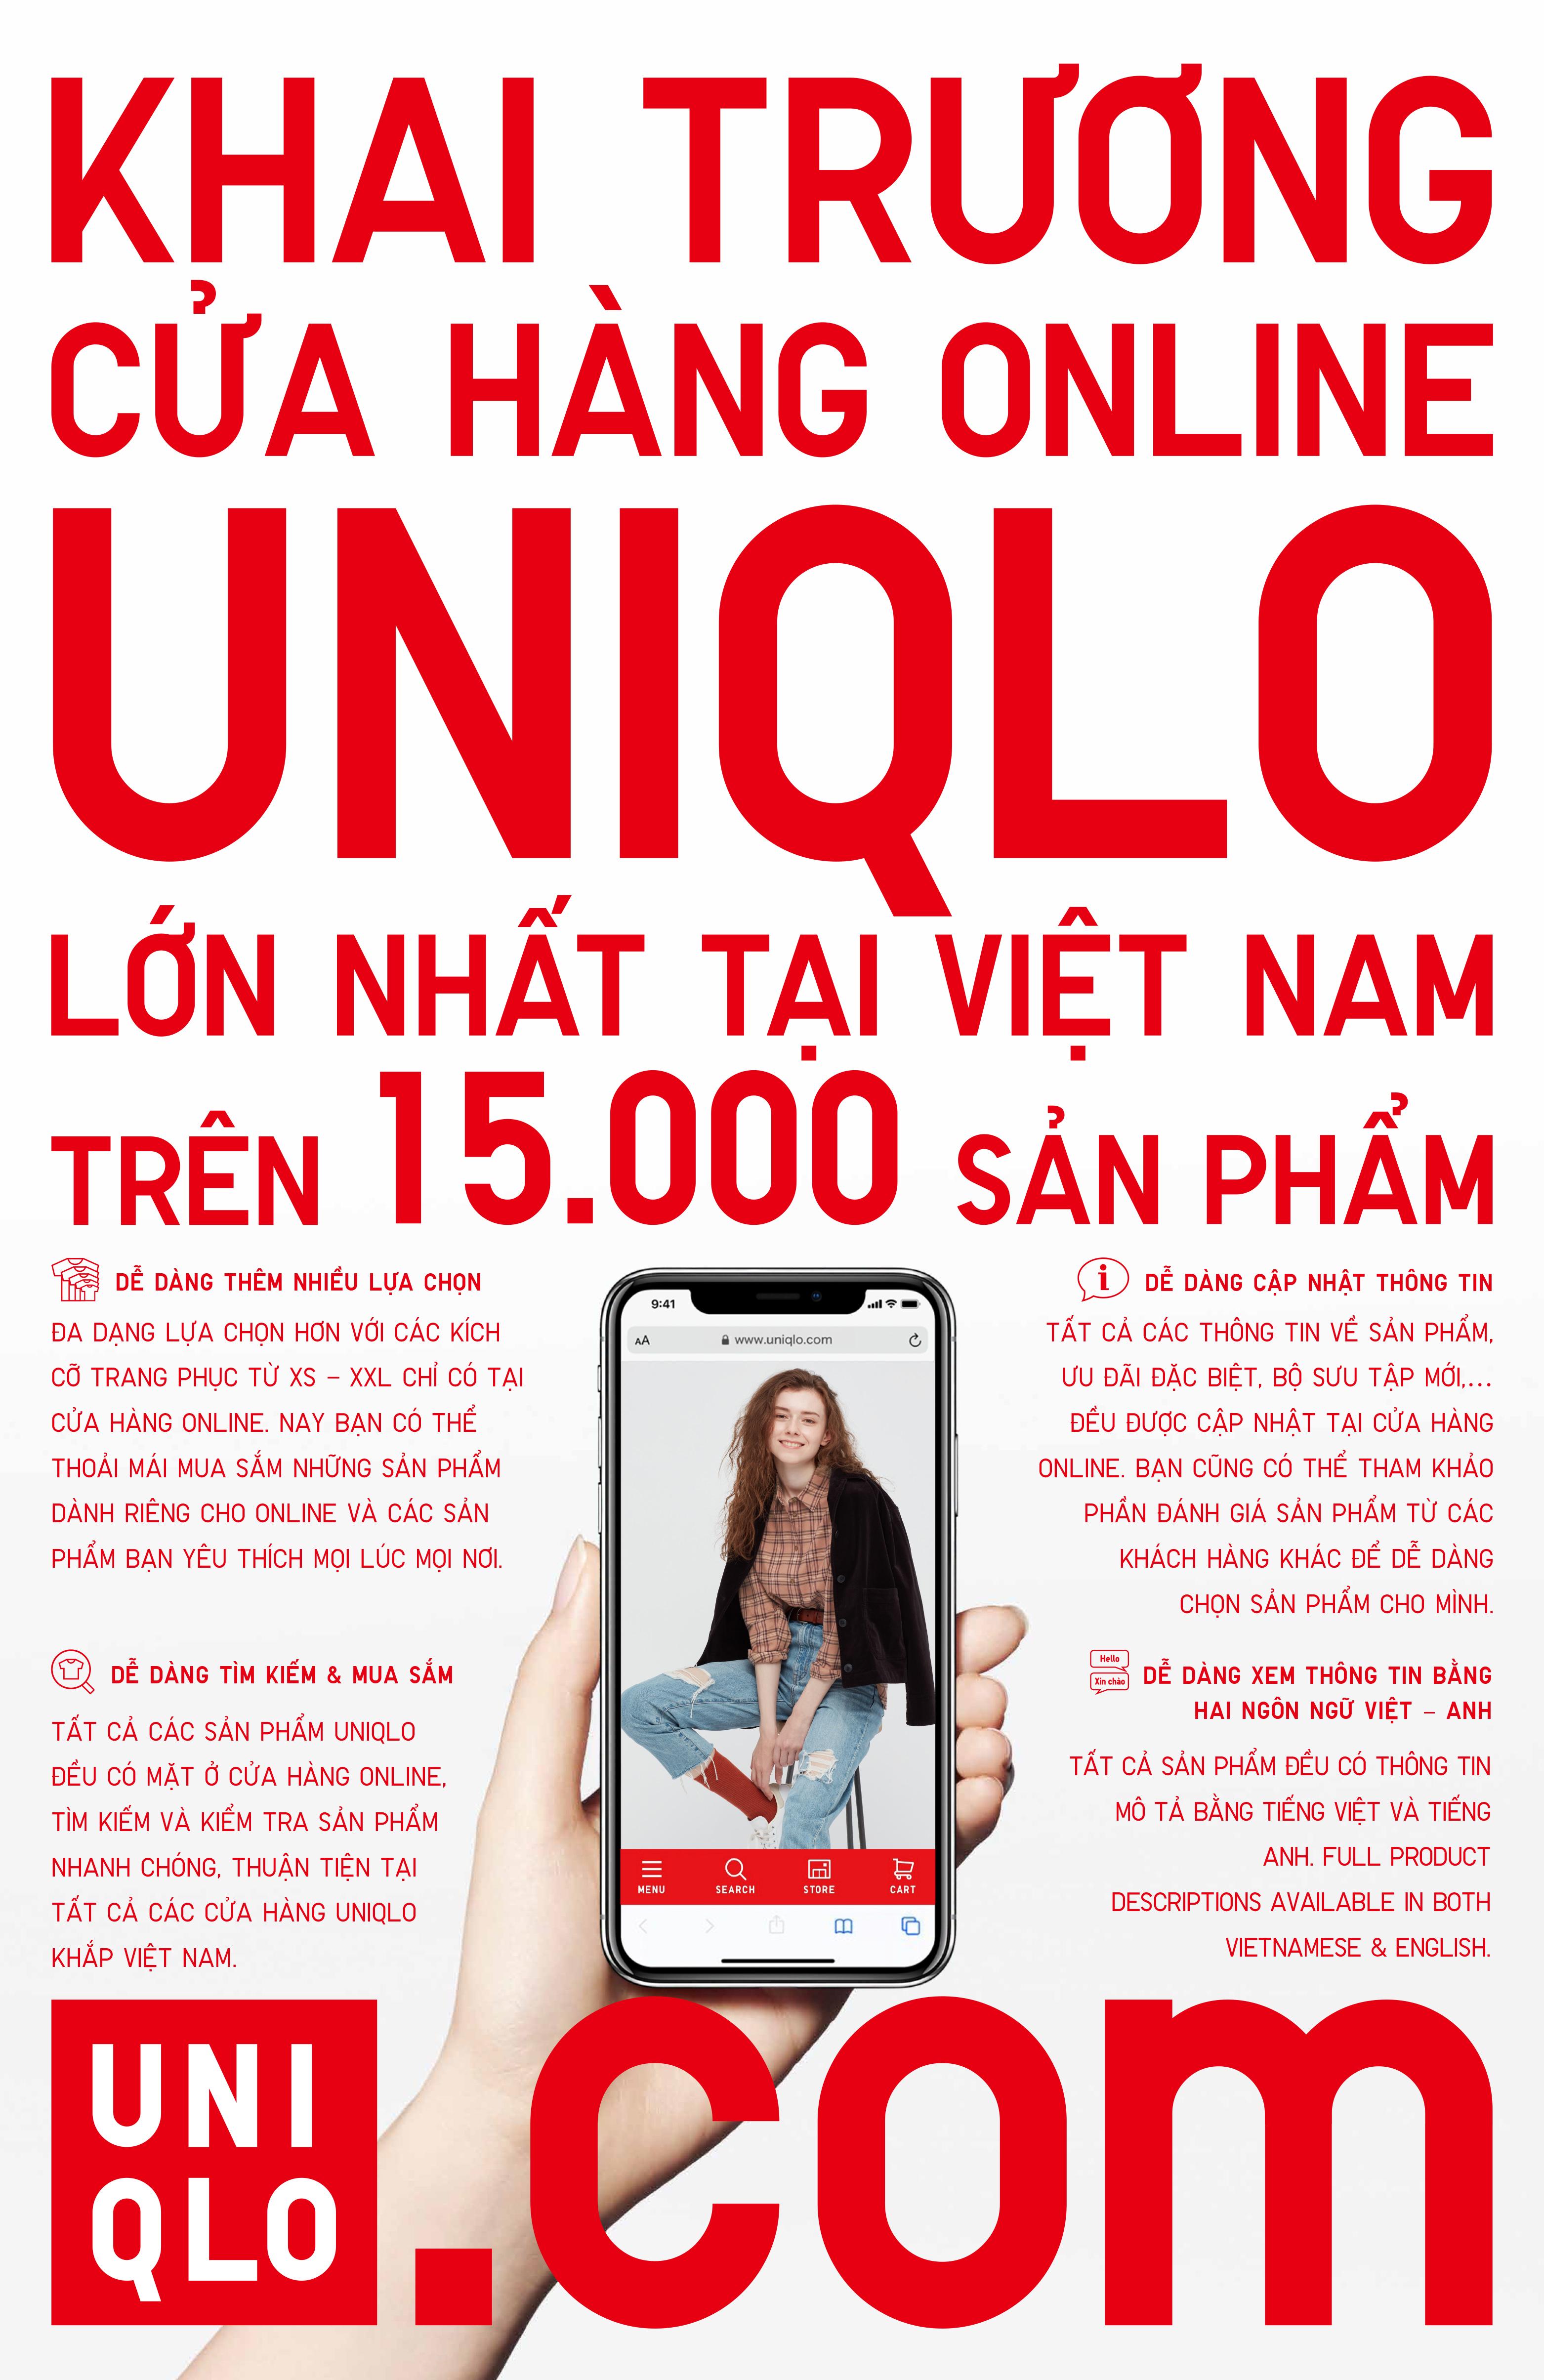 Hướng dẫn đặt hàng trực tuyến  UQ VN  UQ VN Customer Service